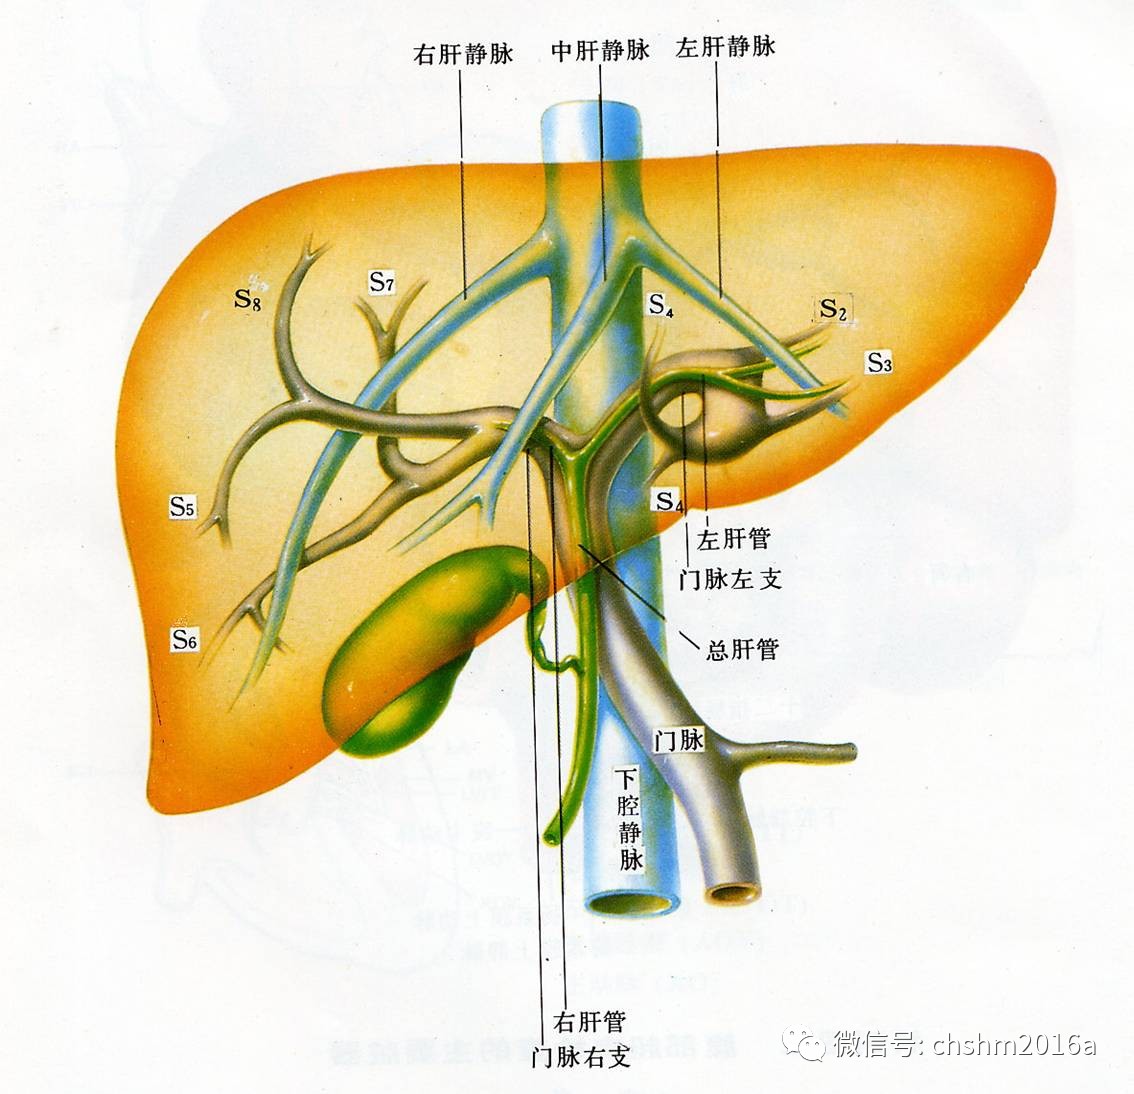 肝脏解剖图及分叶图片